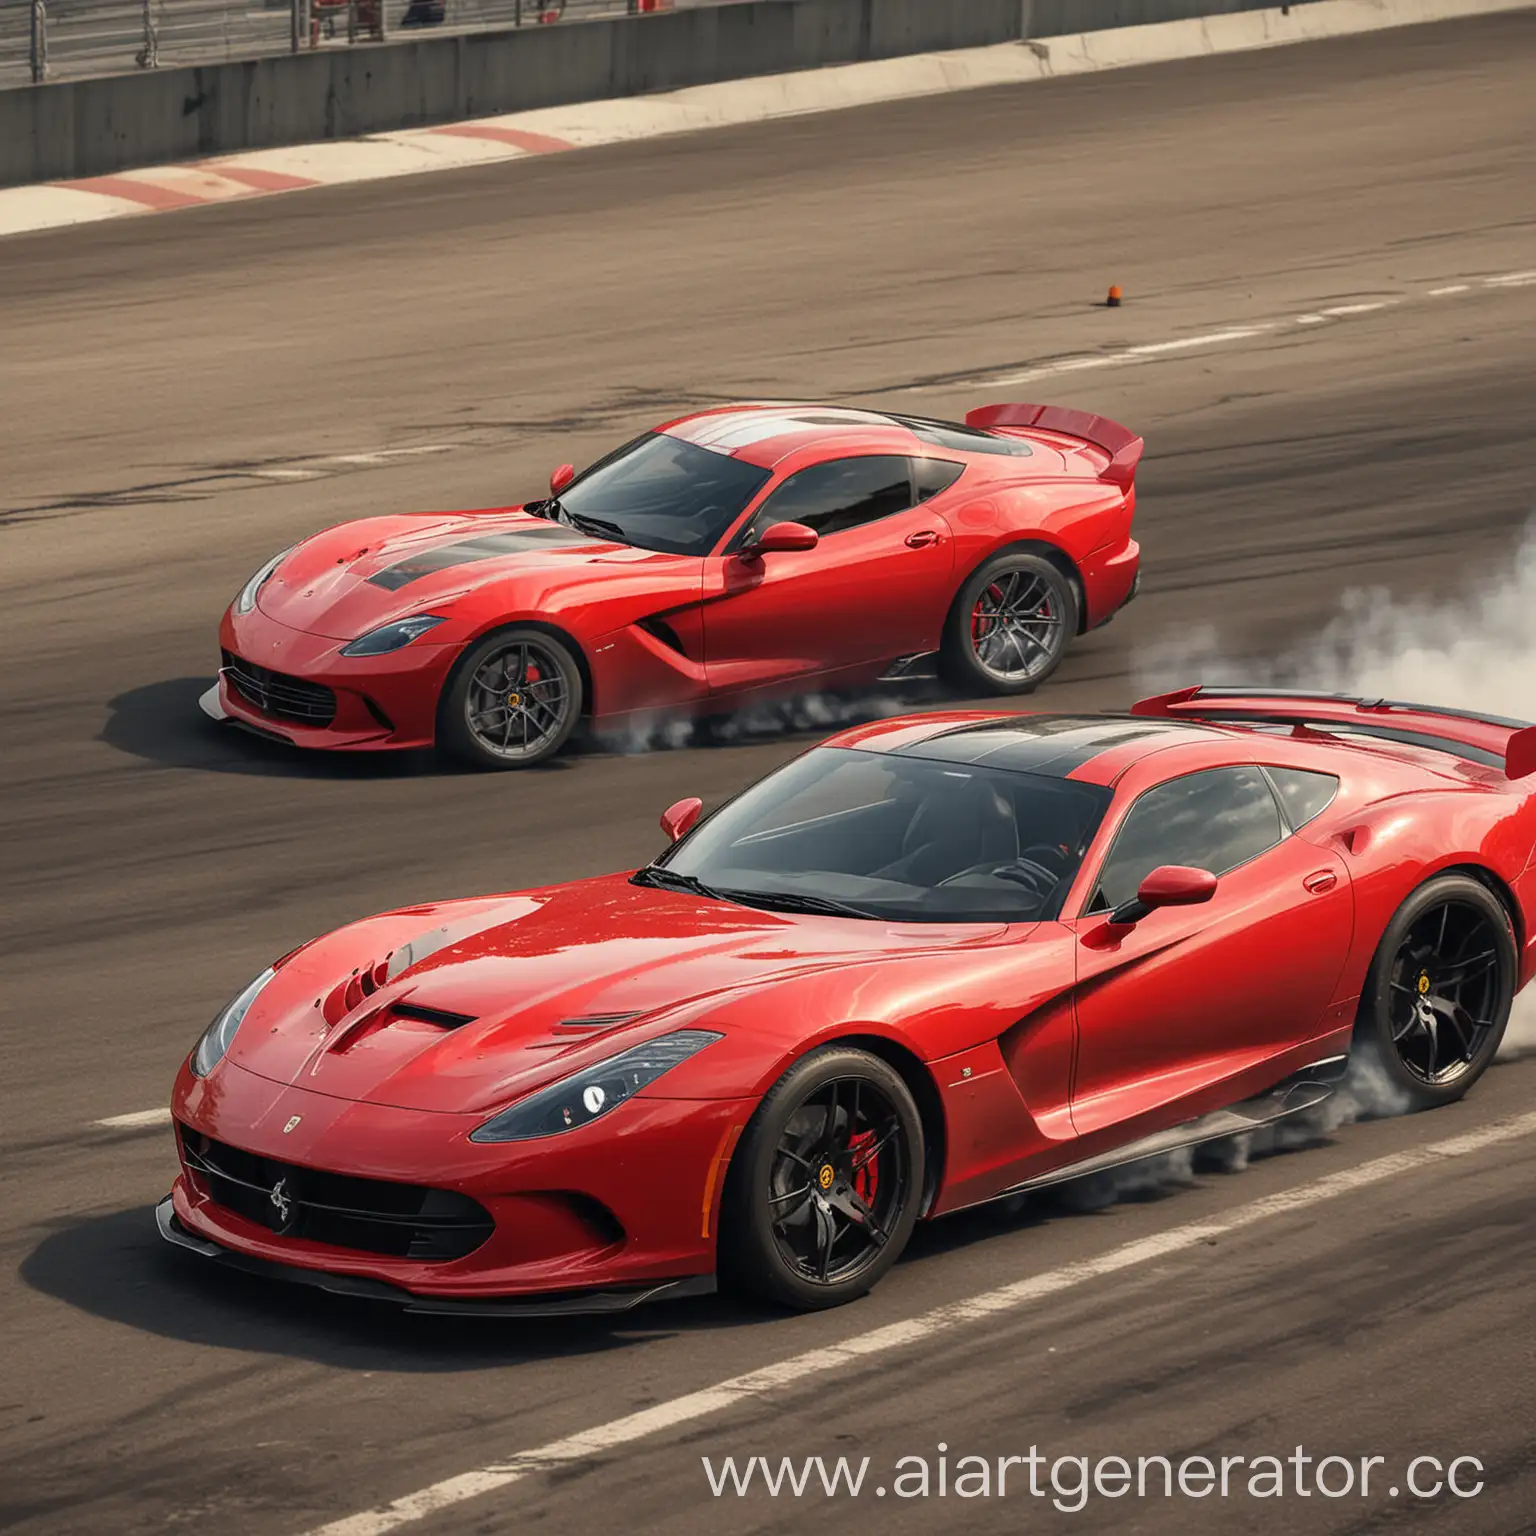 Ferrari-Portofino-vs-Dodge-Viper-Intense-Drag-Racing-Showdown